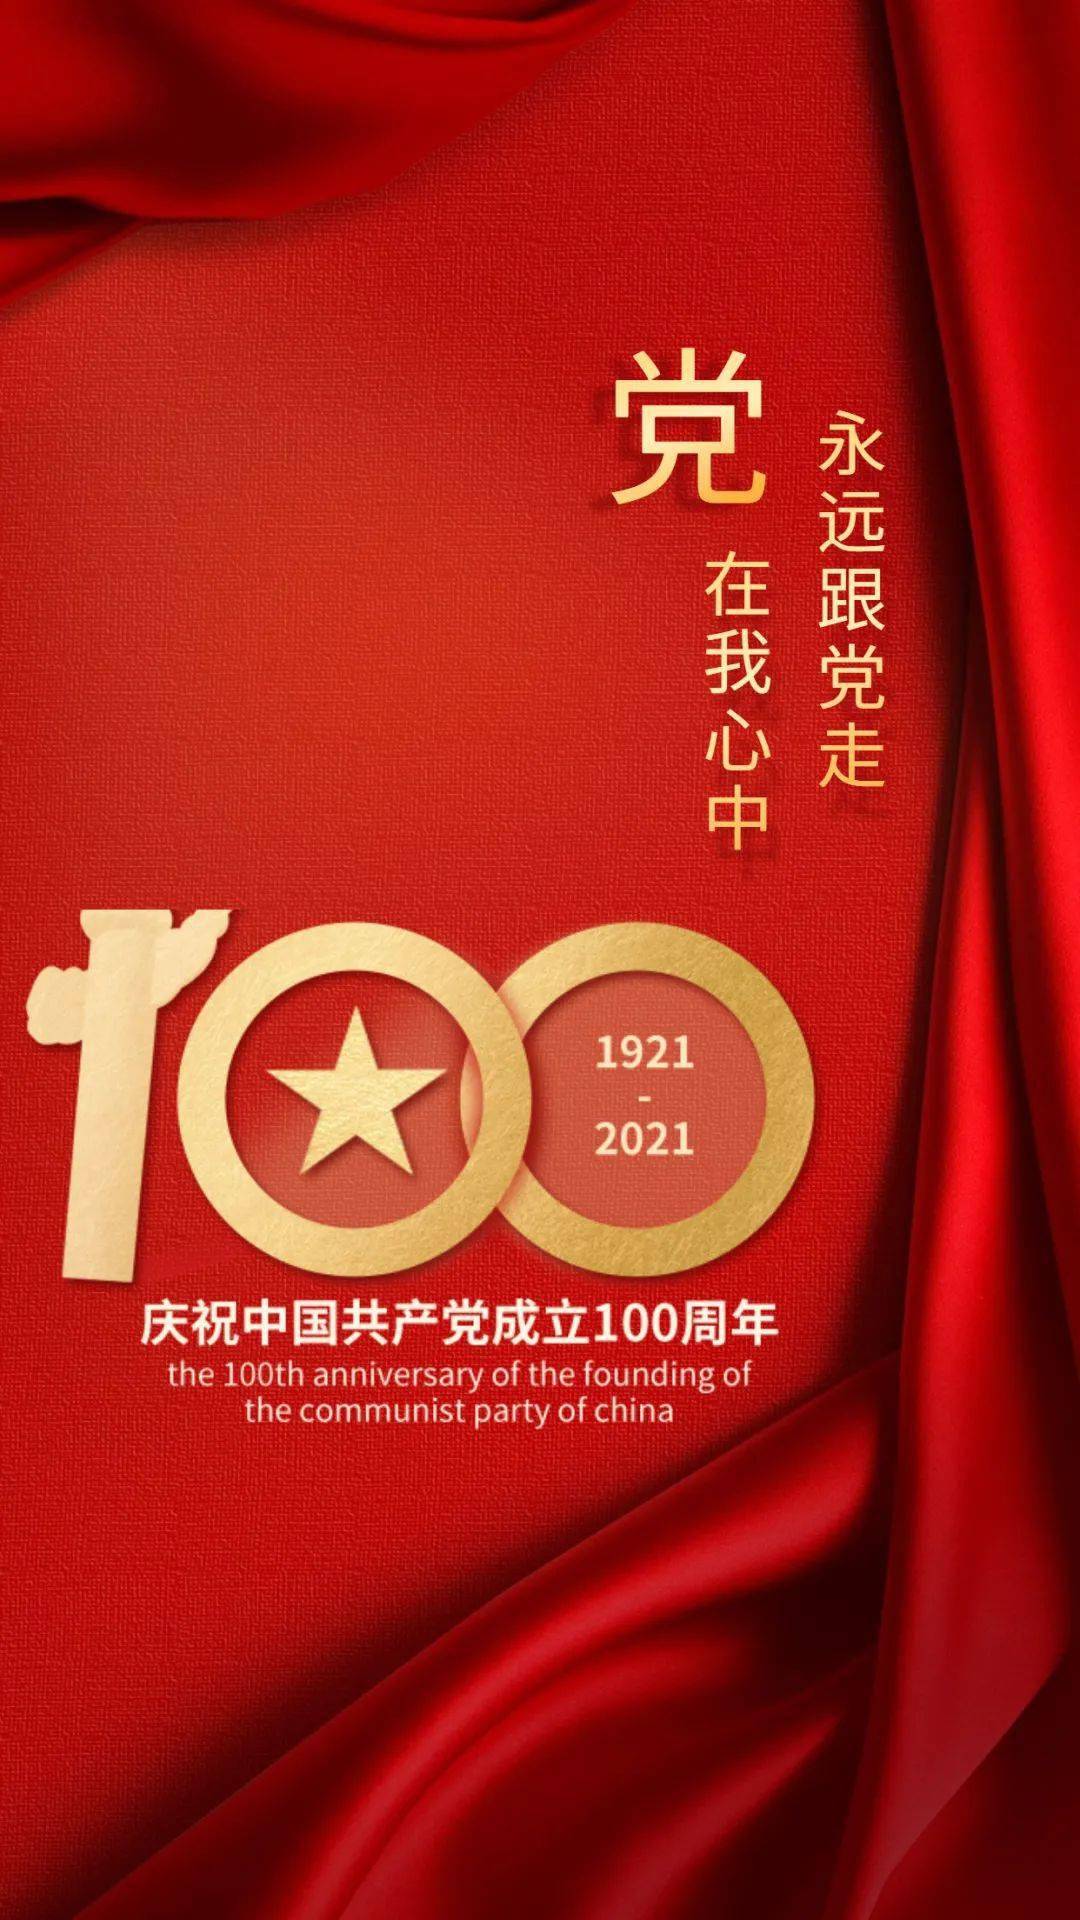 深圳世界之窗恭贺中国共产党百年华诞!